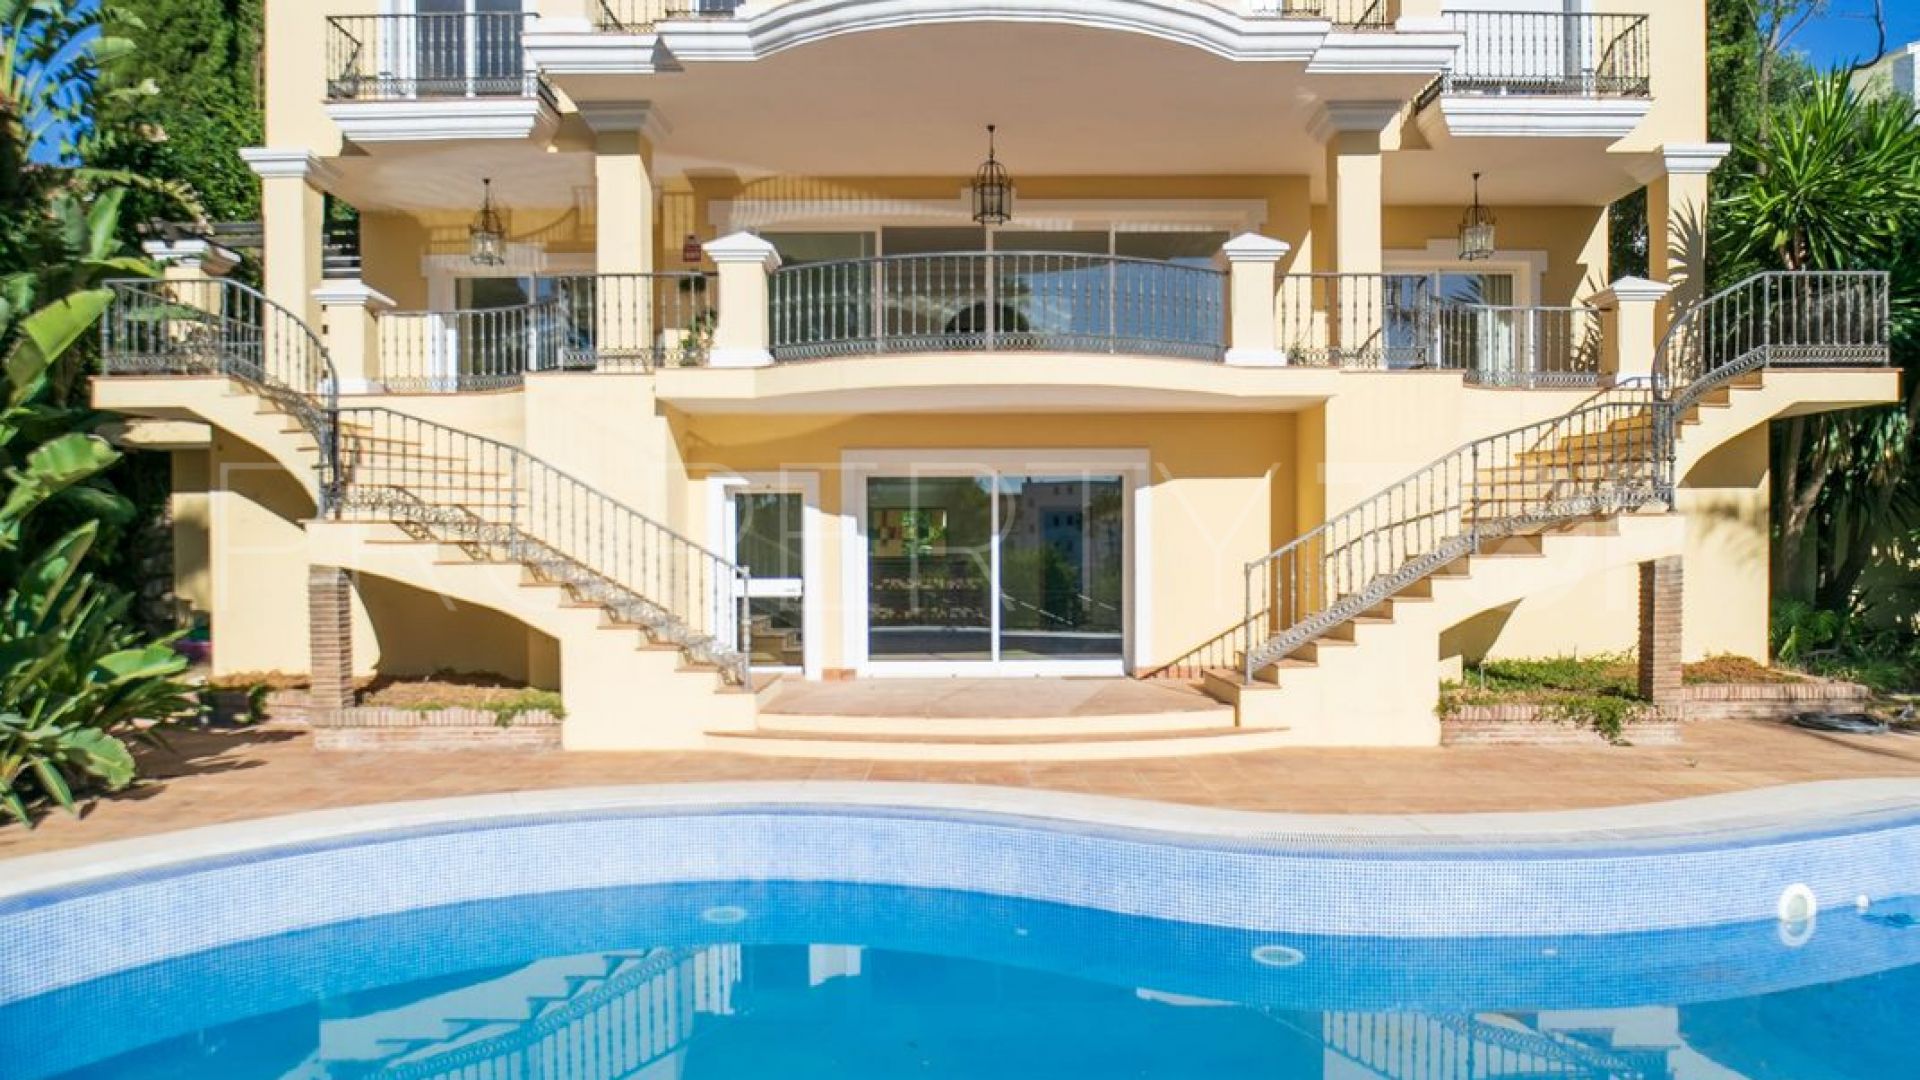 8 bedrooms villa in Benahavis for sale